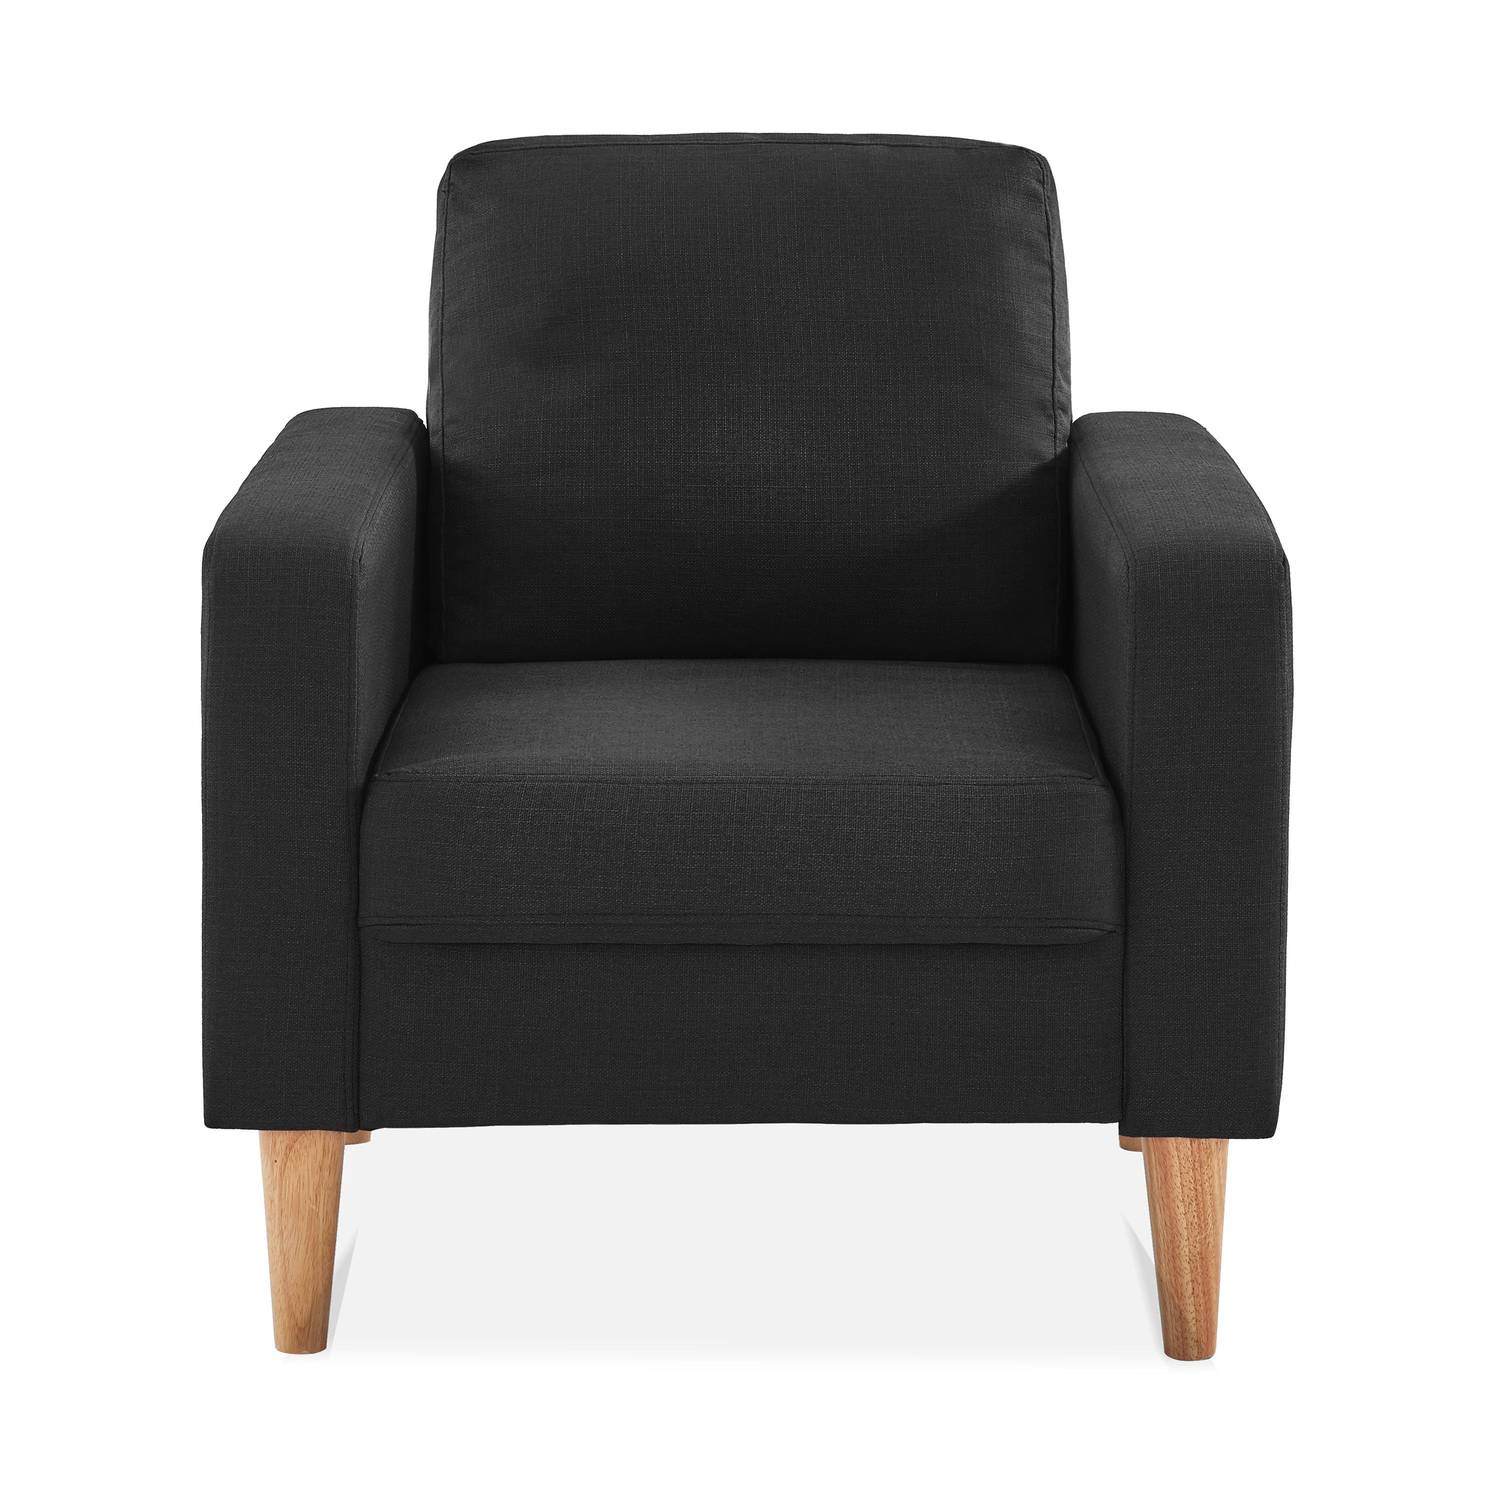 Scandi-style armchair with wooden legs - Bjorn - Dark Grey Photo3